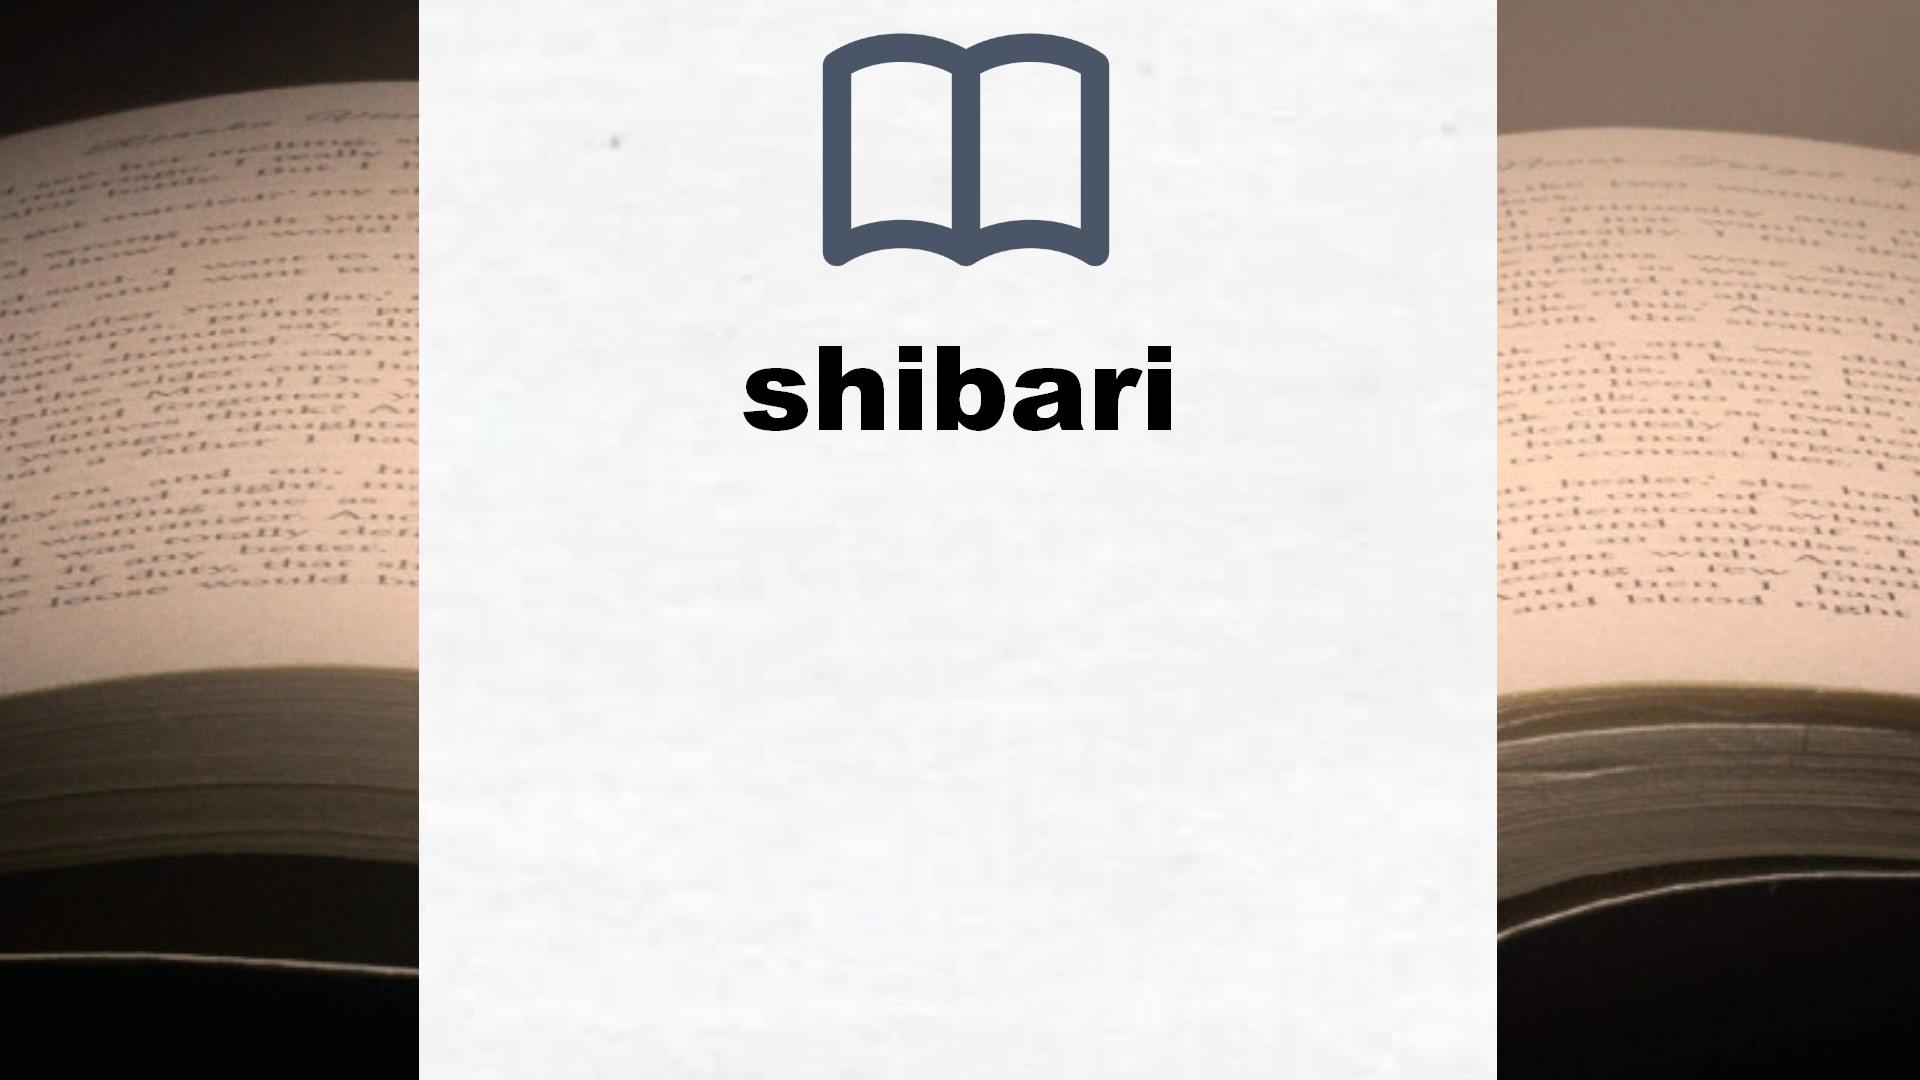 Libros sobre shibari